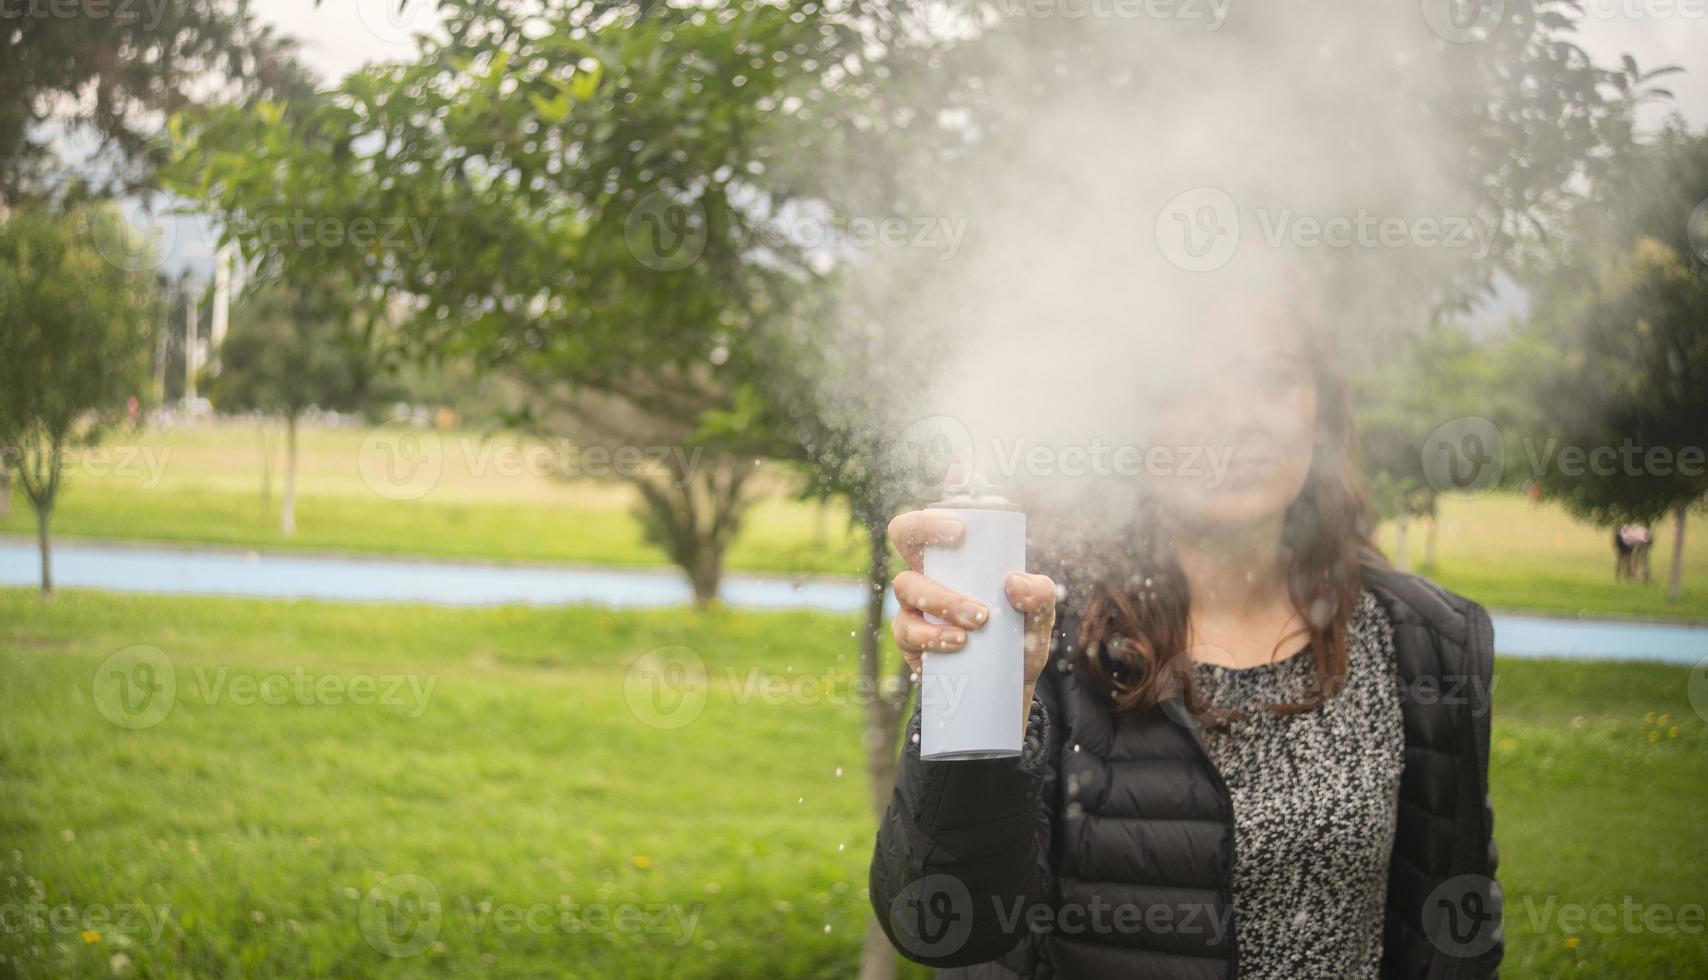 mujer hispana disparando un chorro de espuma blanca de una lata de aerosol en medio de un parque foto